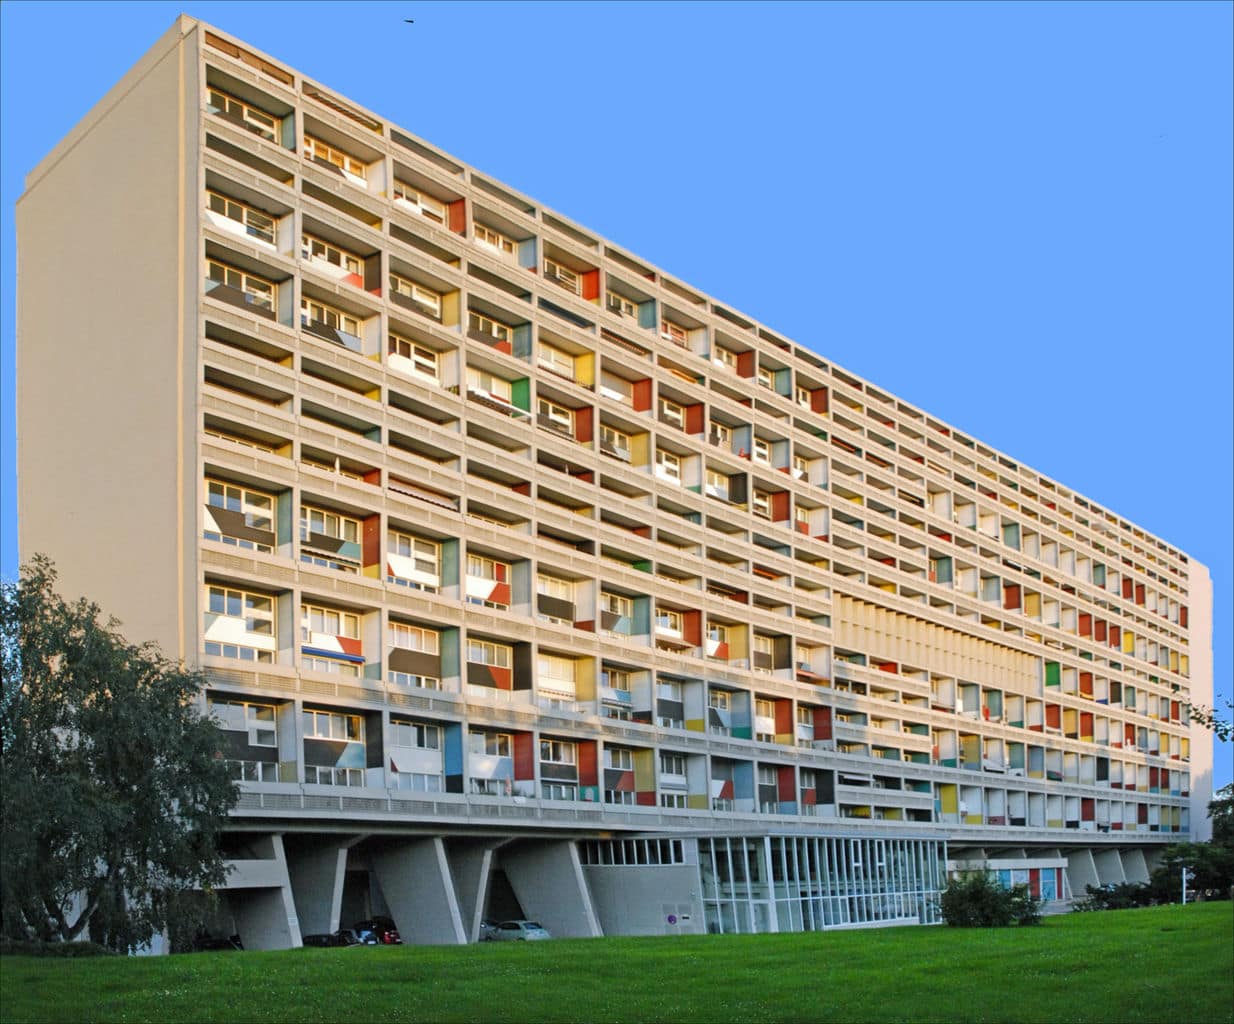 L'Unité d'Habitation de Le Corbusier